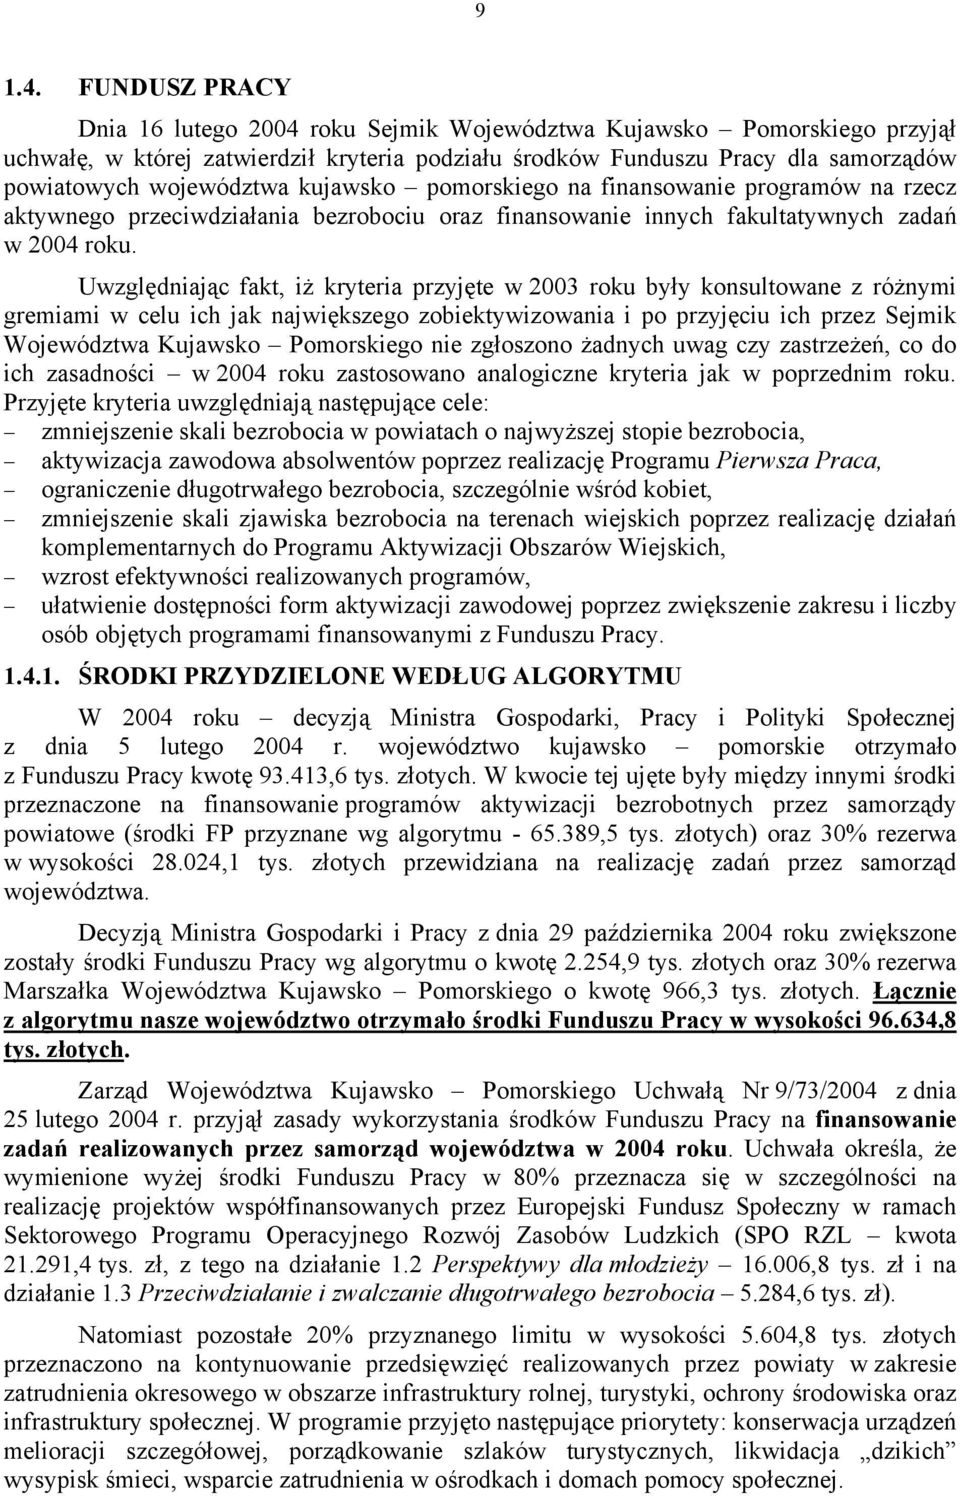 kujawsko pomorskiego na finansowanie programów na rzecz aktywnego przeciwdziałania bezrobociu oraz finansowanie innych fakultatywnych zadań w 2004 roku.